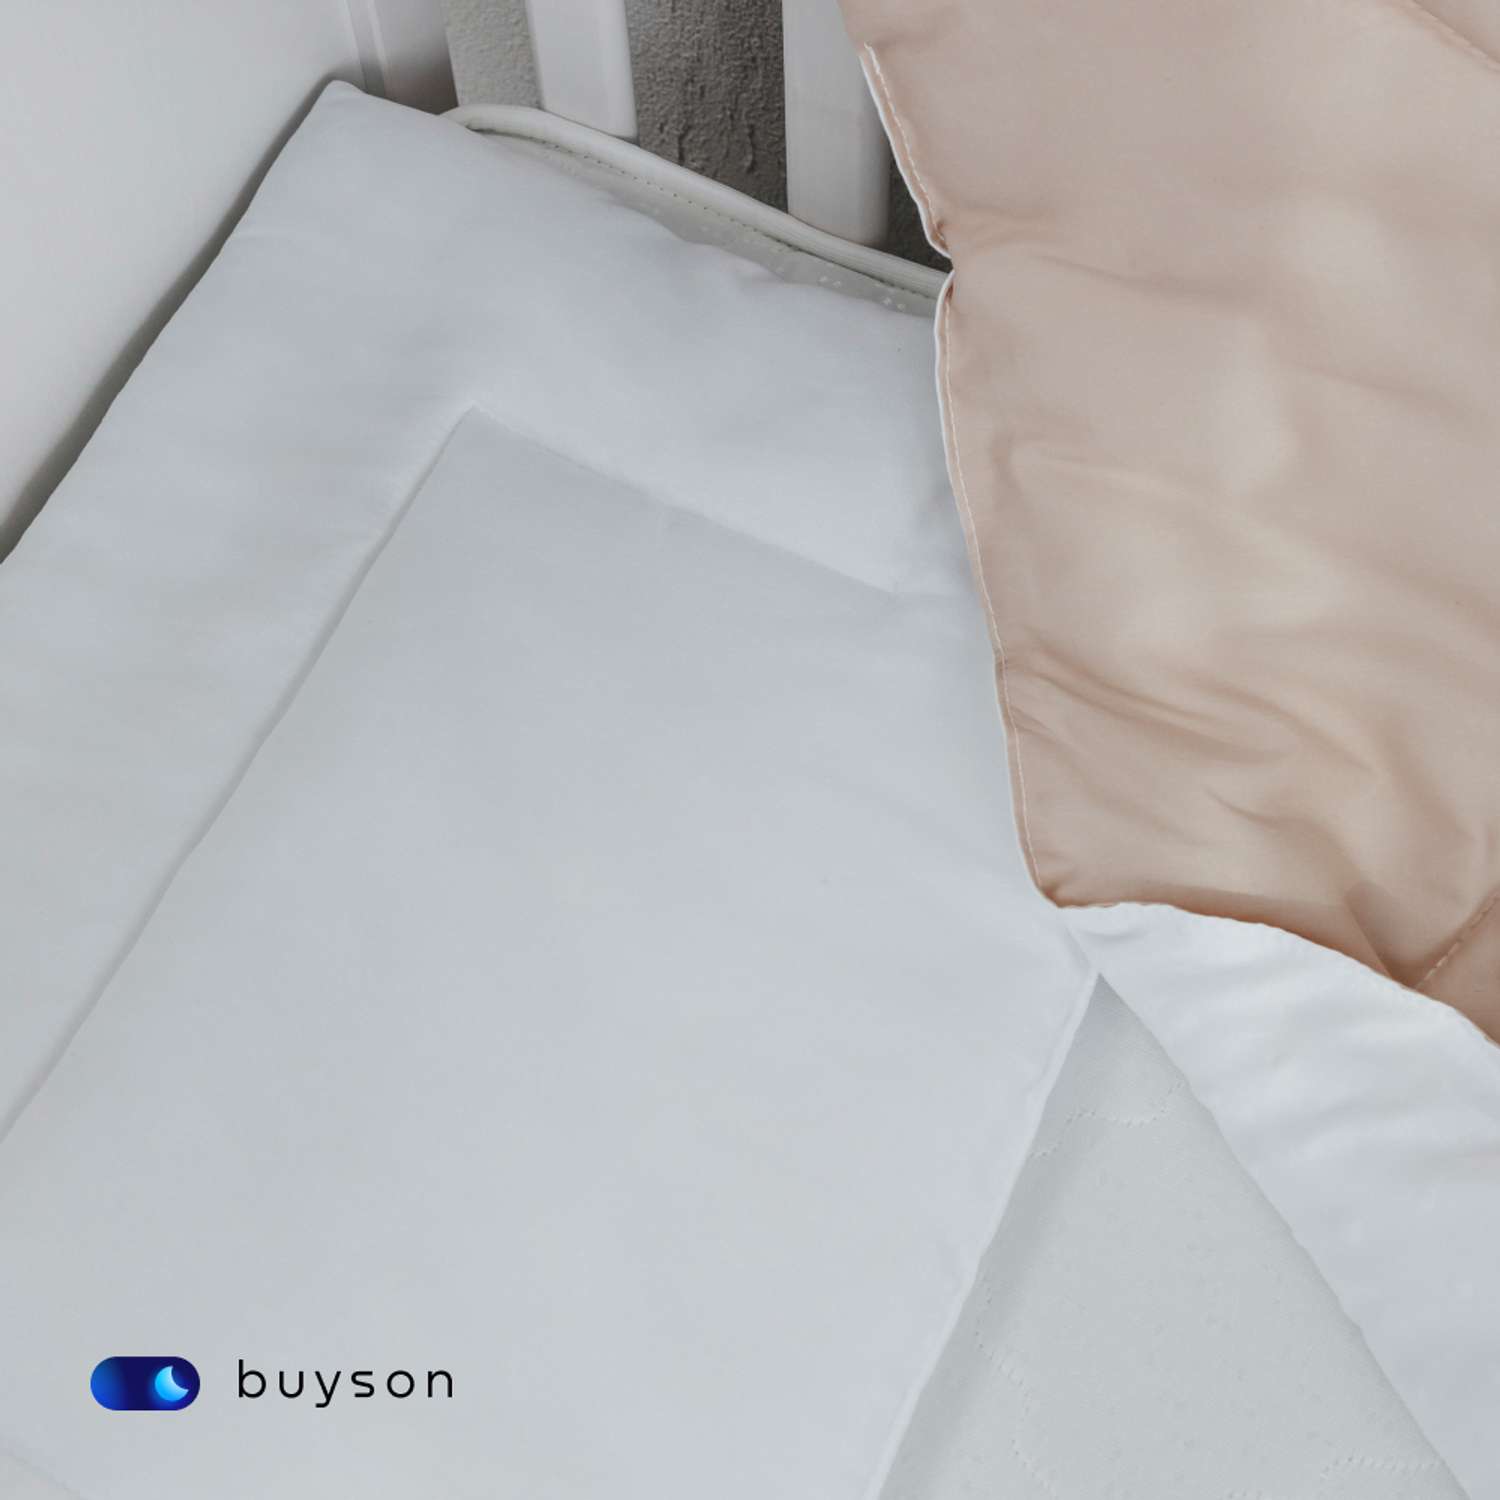 Анатомическая подушка buyson BuyMini для новорожденных от 0 до 3 лет 35х55 см высота 3 см - фото 8